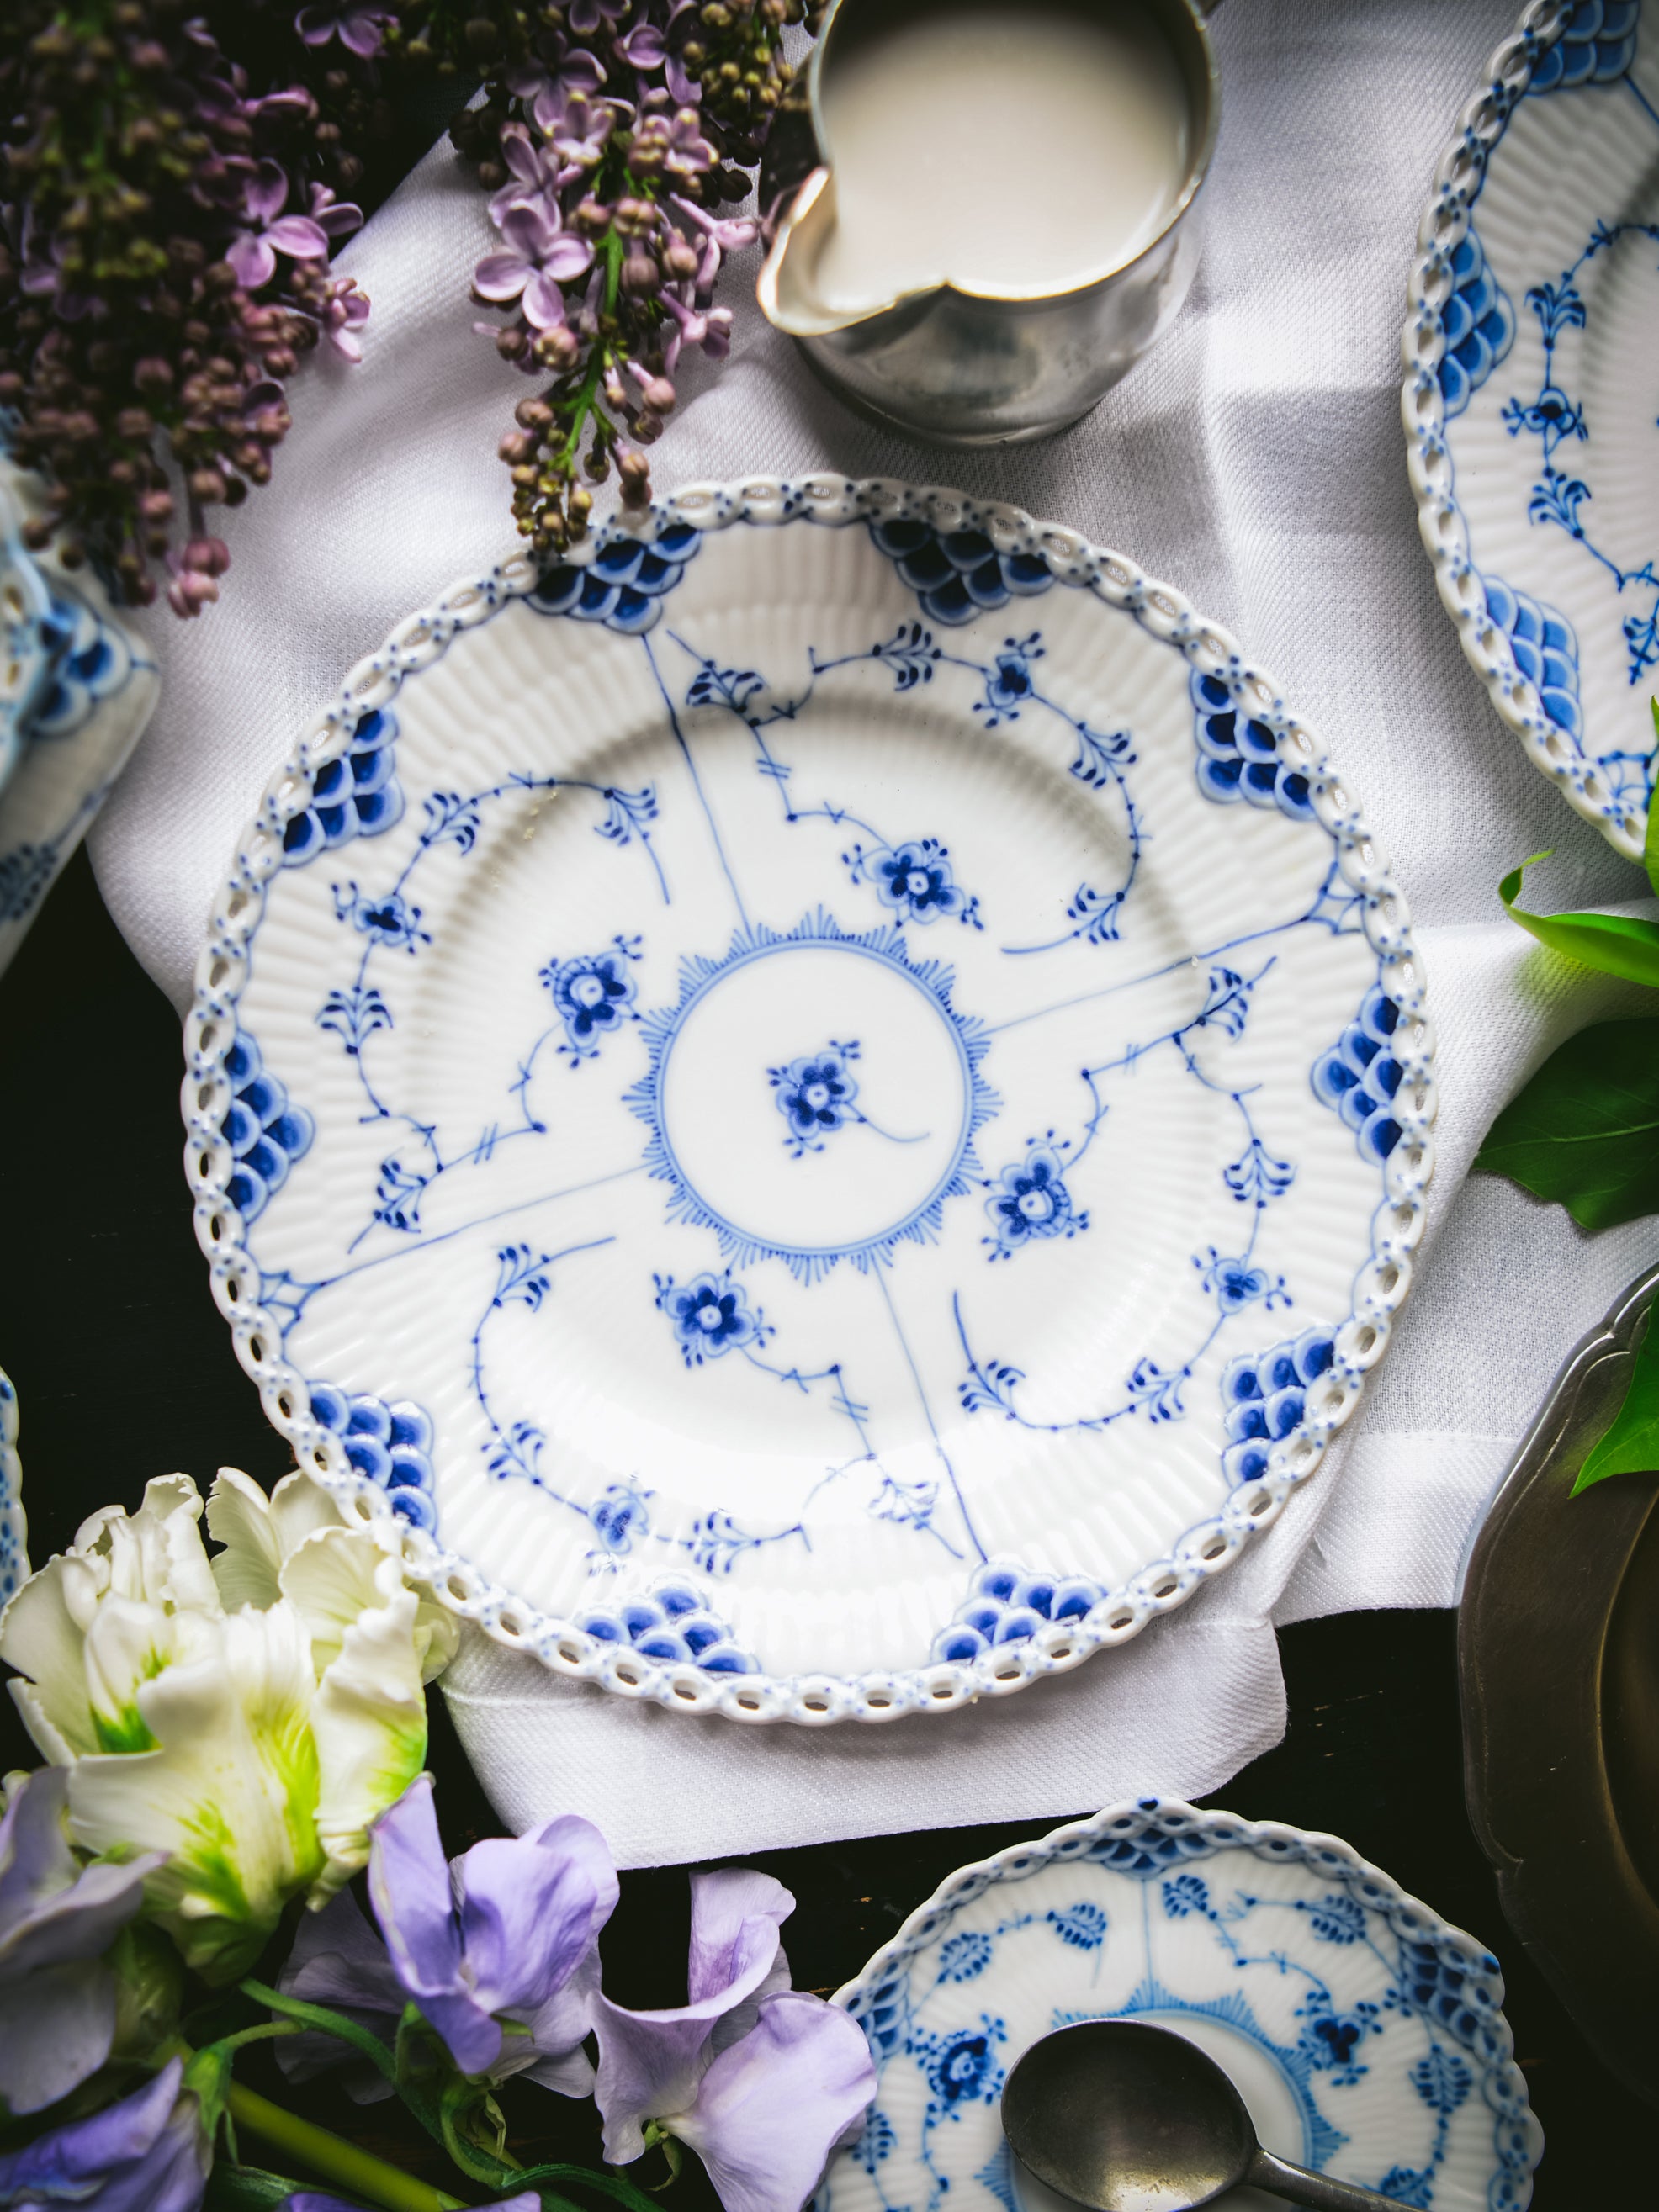 At Auction: 4 Royal Copenhagen Blue Flower Braided Porcelain Salad